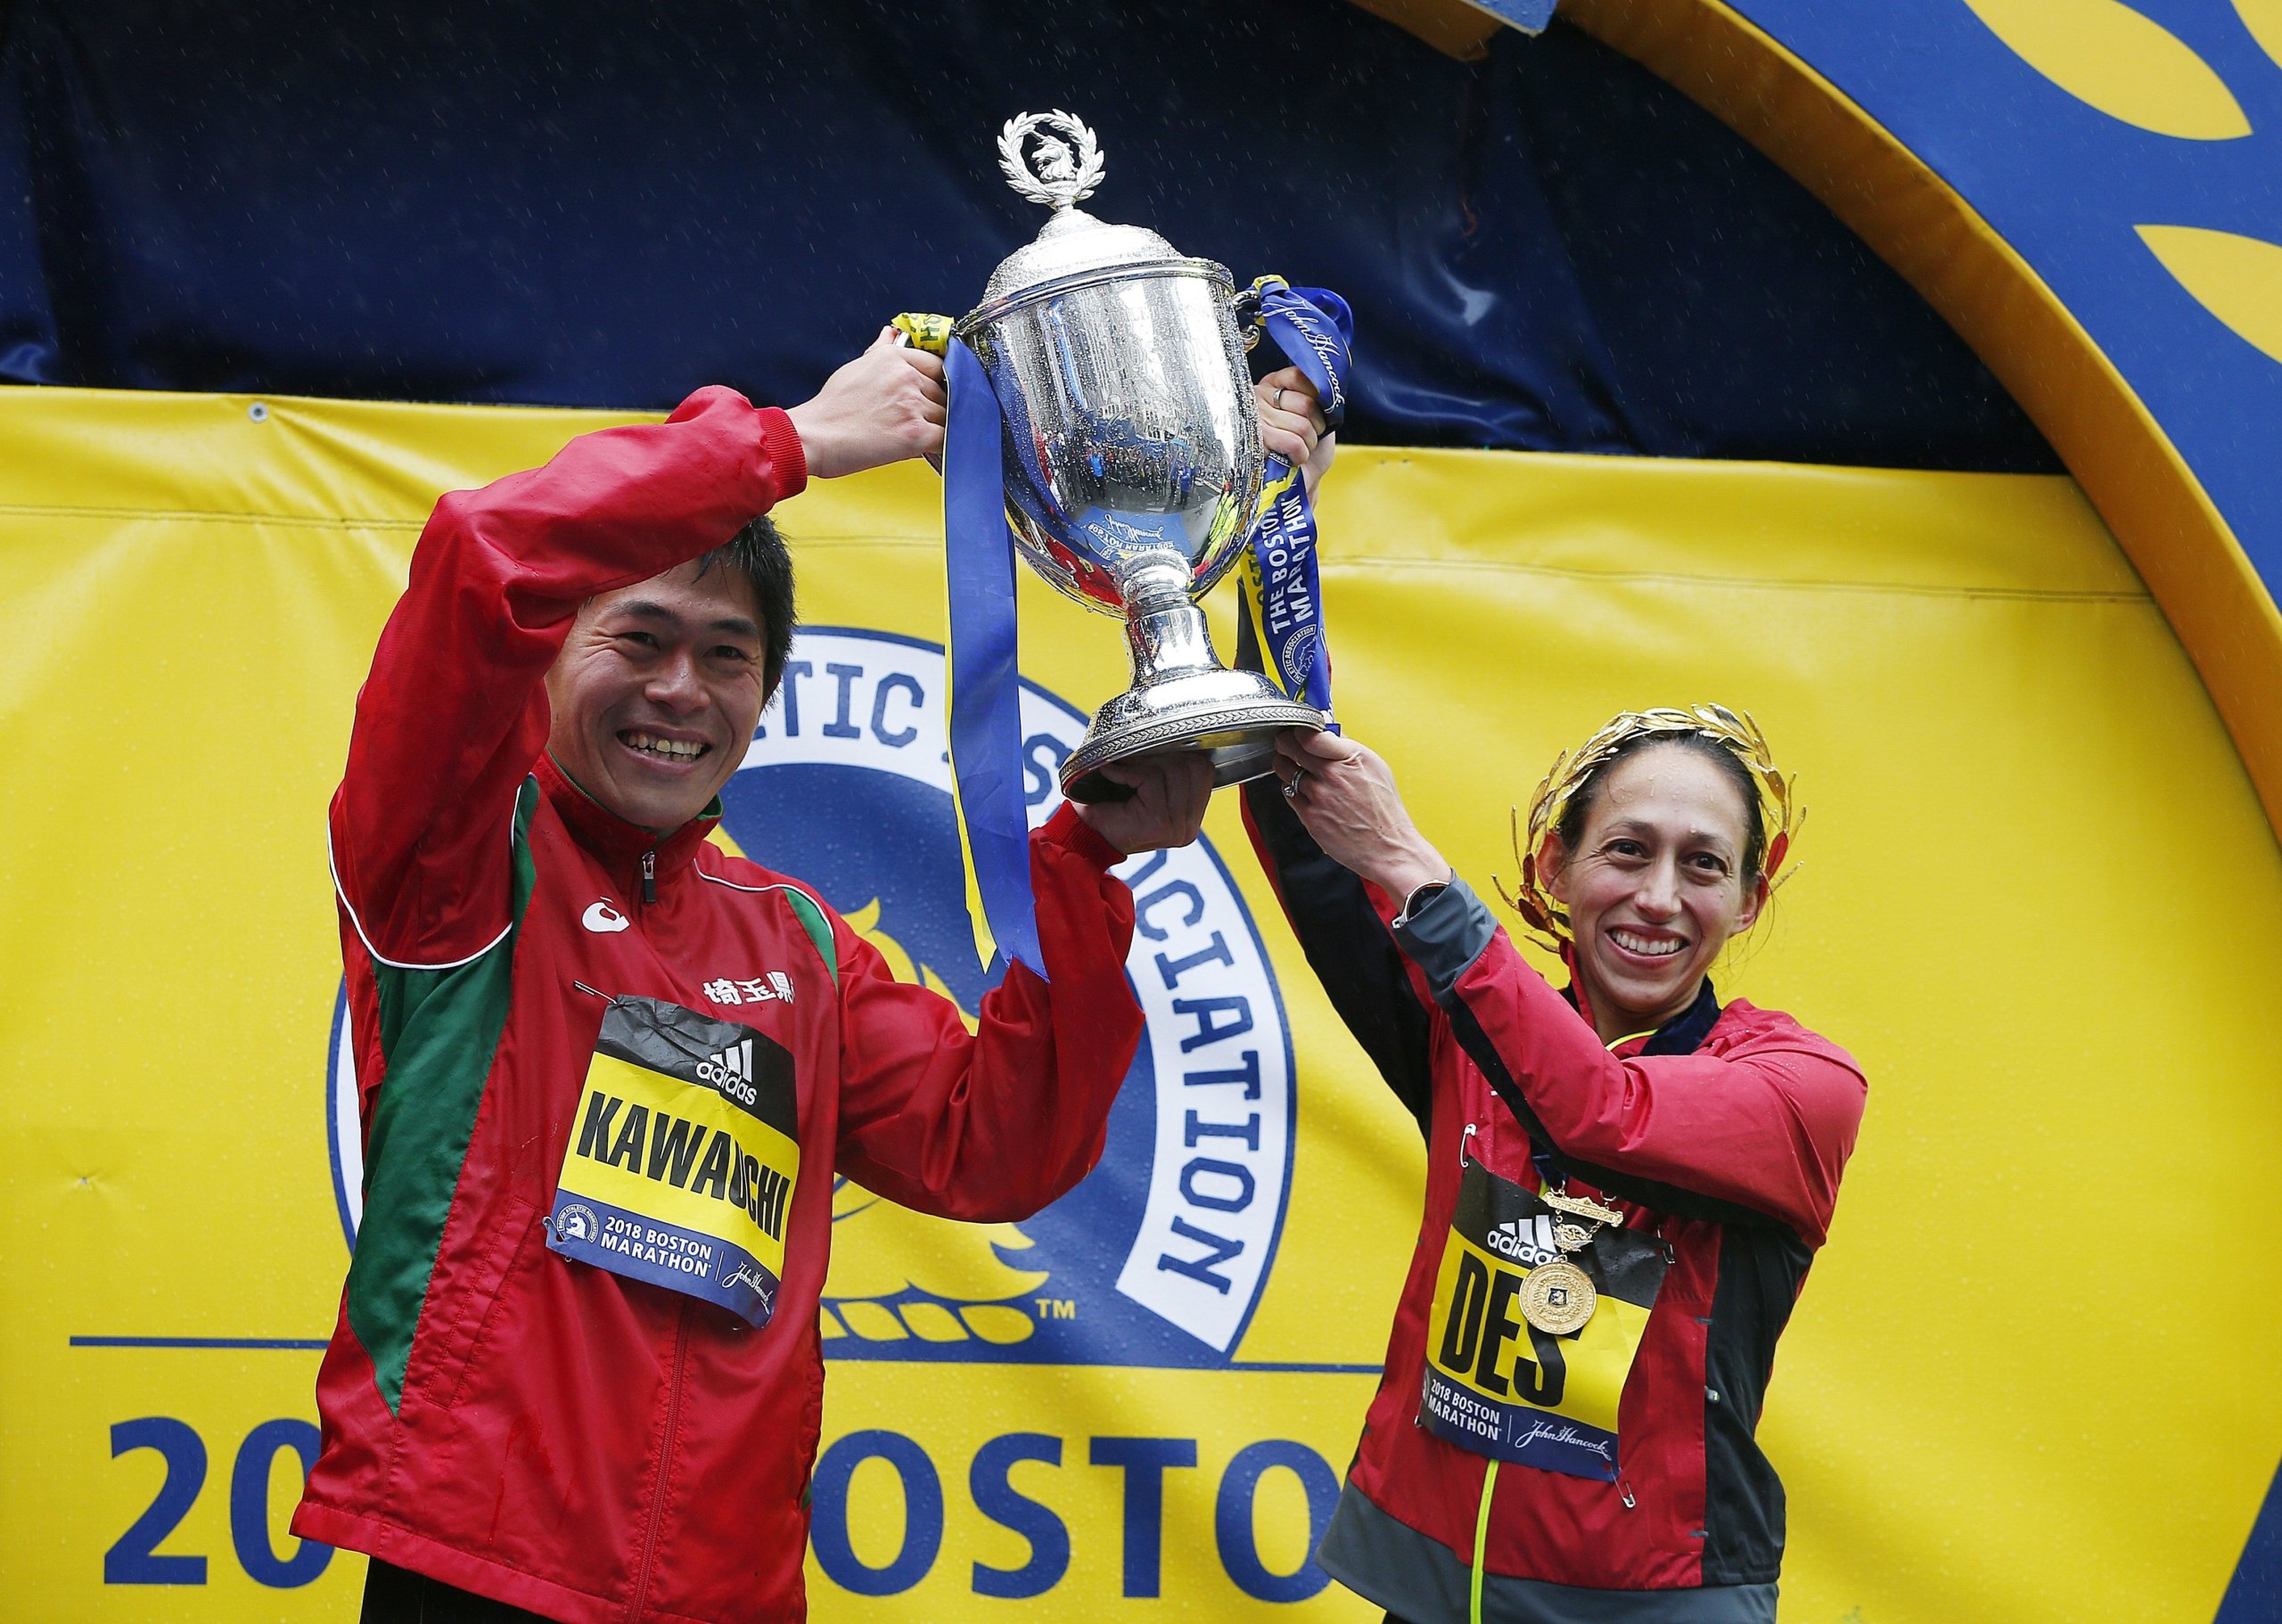 Atleta hispana Des Linden hace historia al ganar la Maratón de Boston